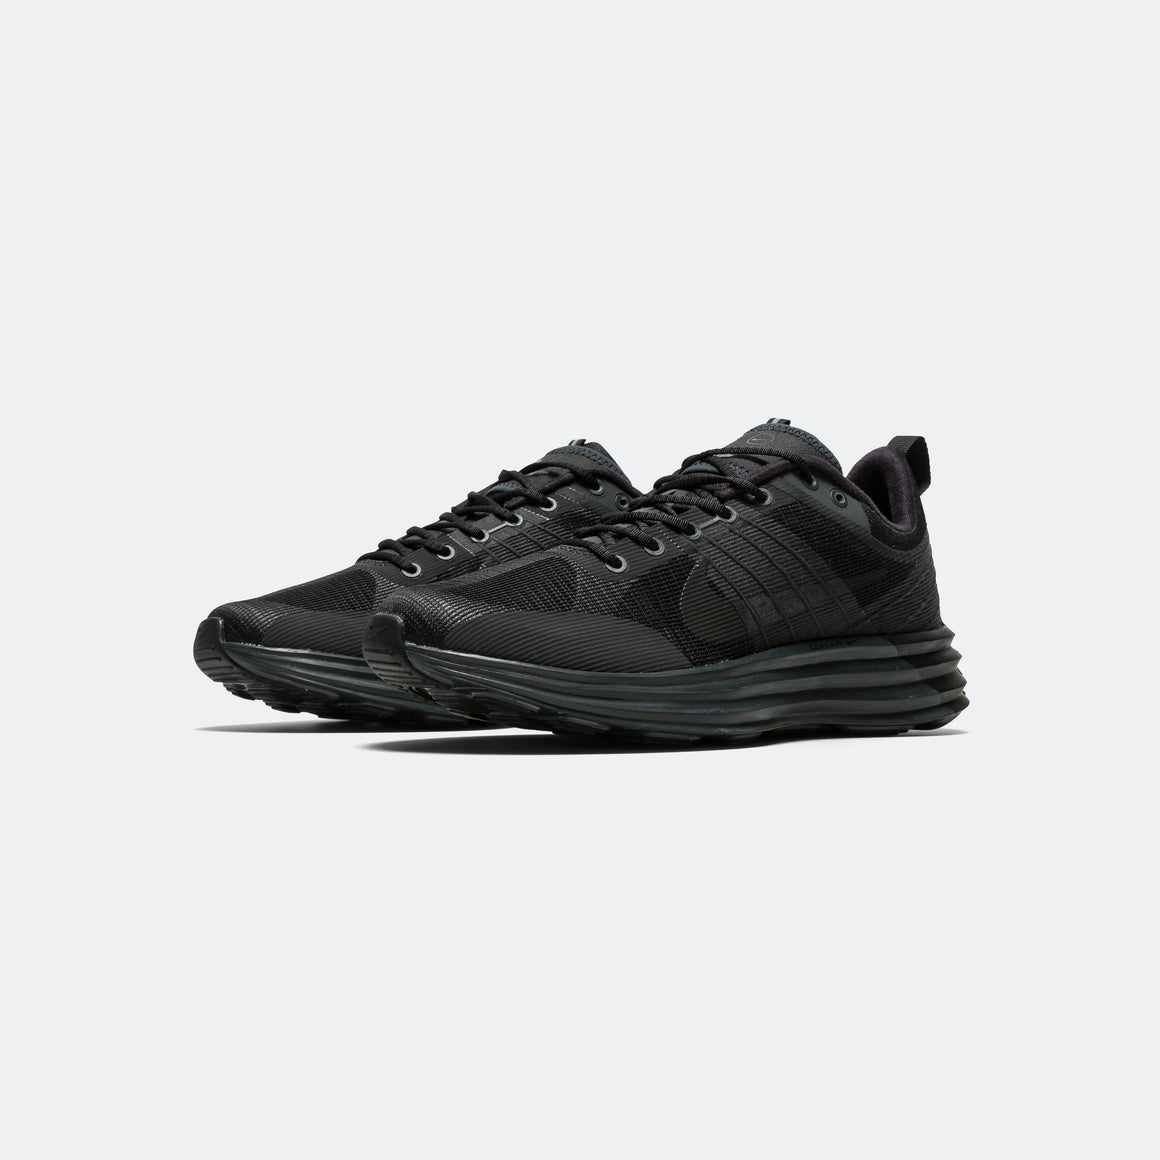 Nike - Lunar Roam - Dk Smoke Grey/Black - UP THERE